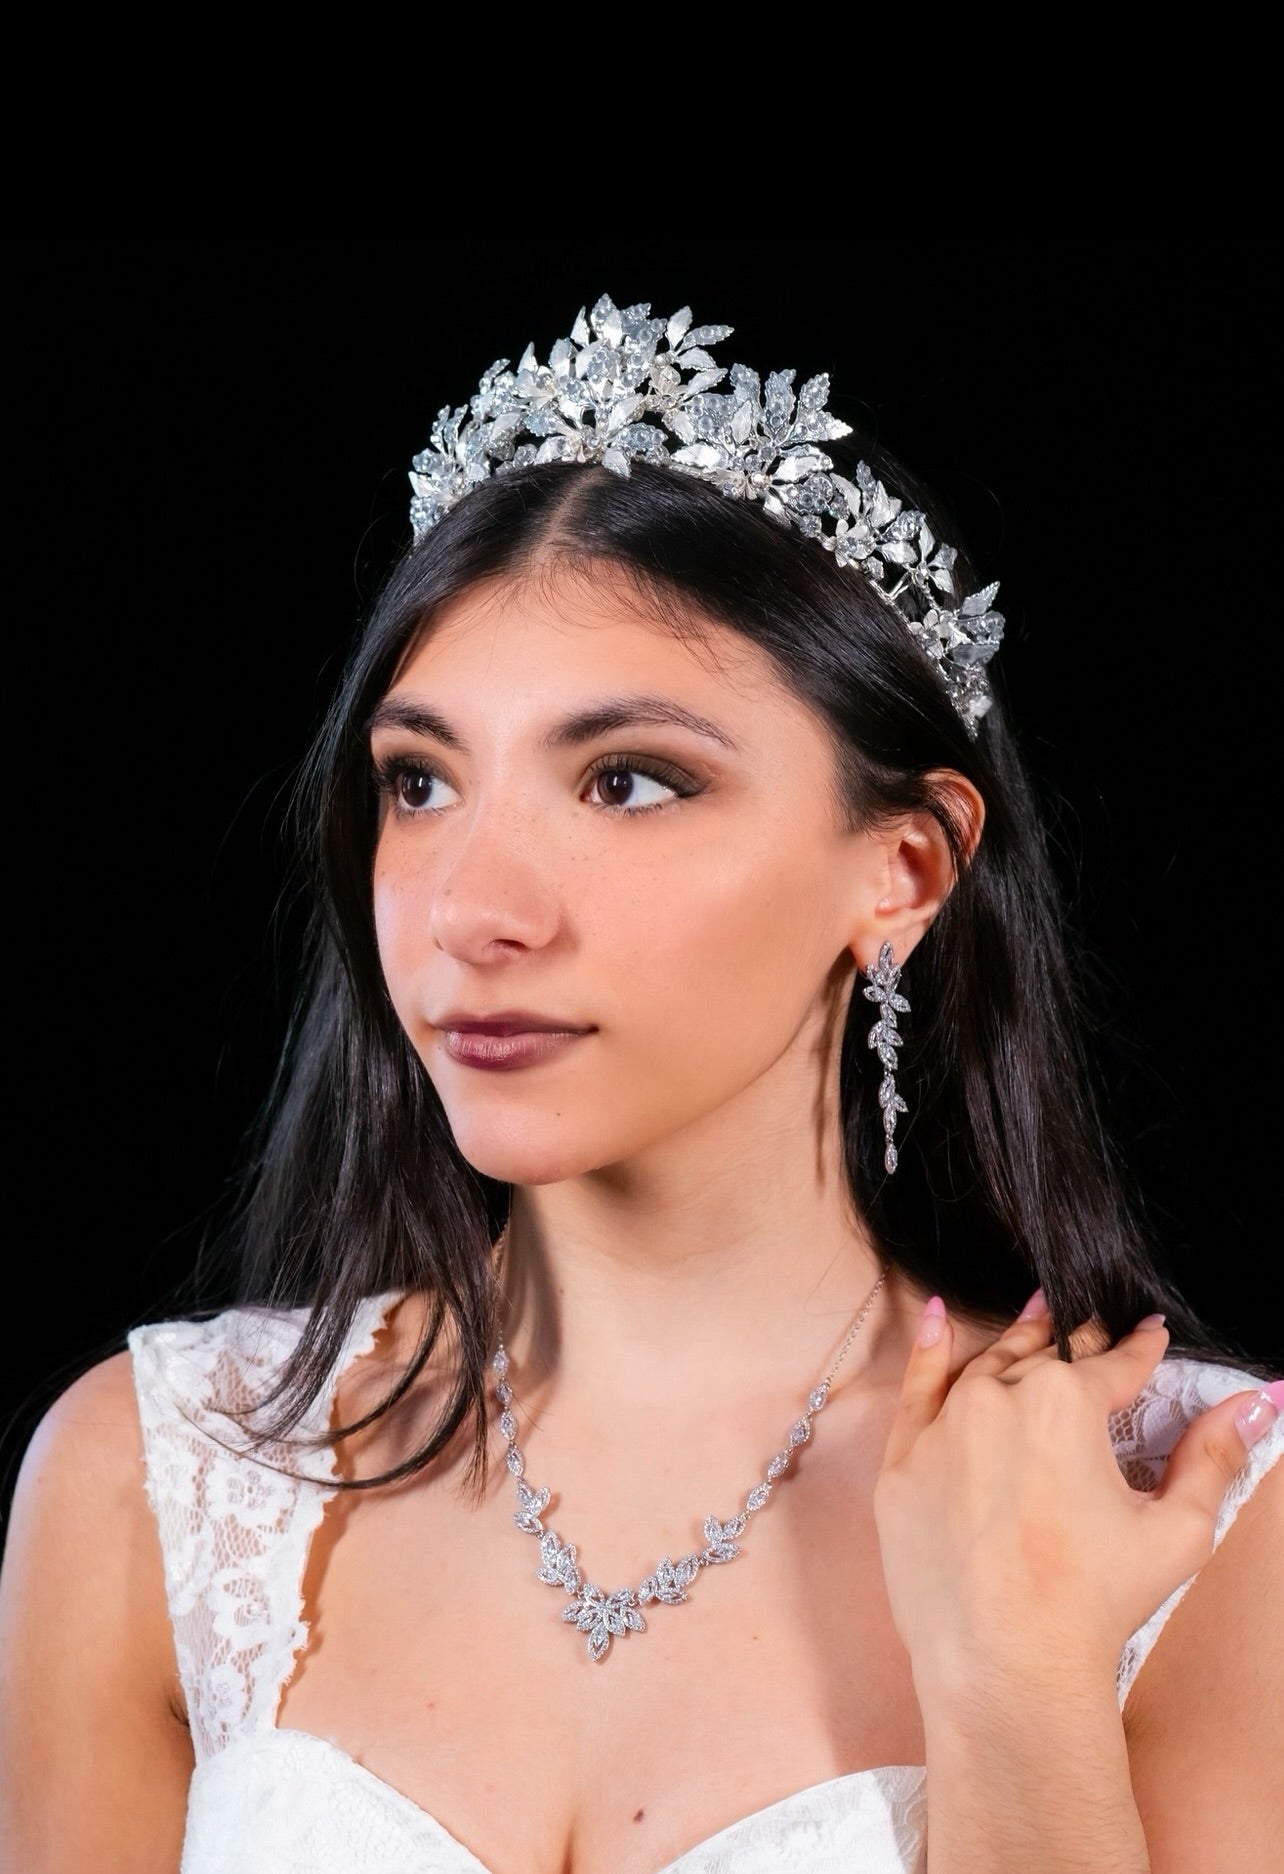 Kate - Kate inspired coronation wedding crown tiara